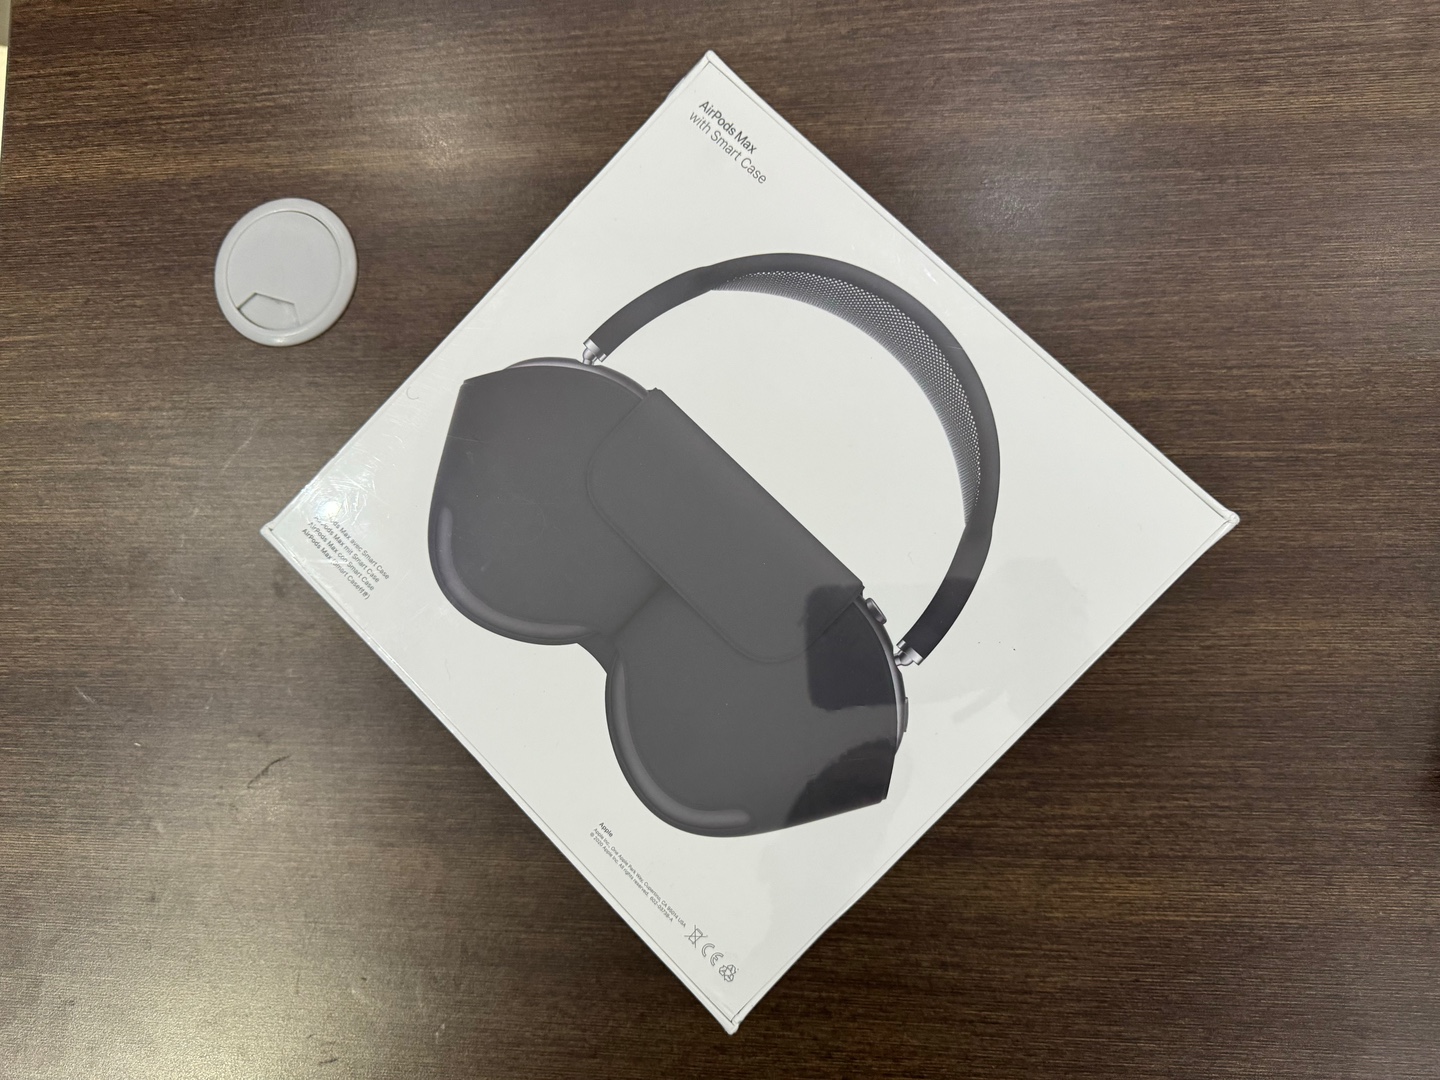 camaras y audio - AirPods Max Nuevos Sellados by Apple, Color: Space Gray, Originales 1